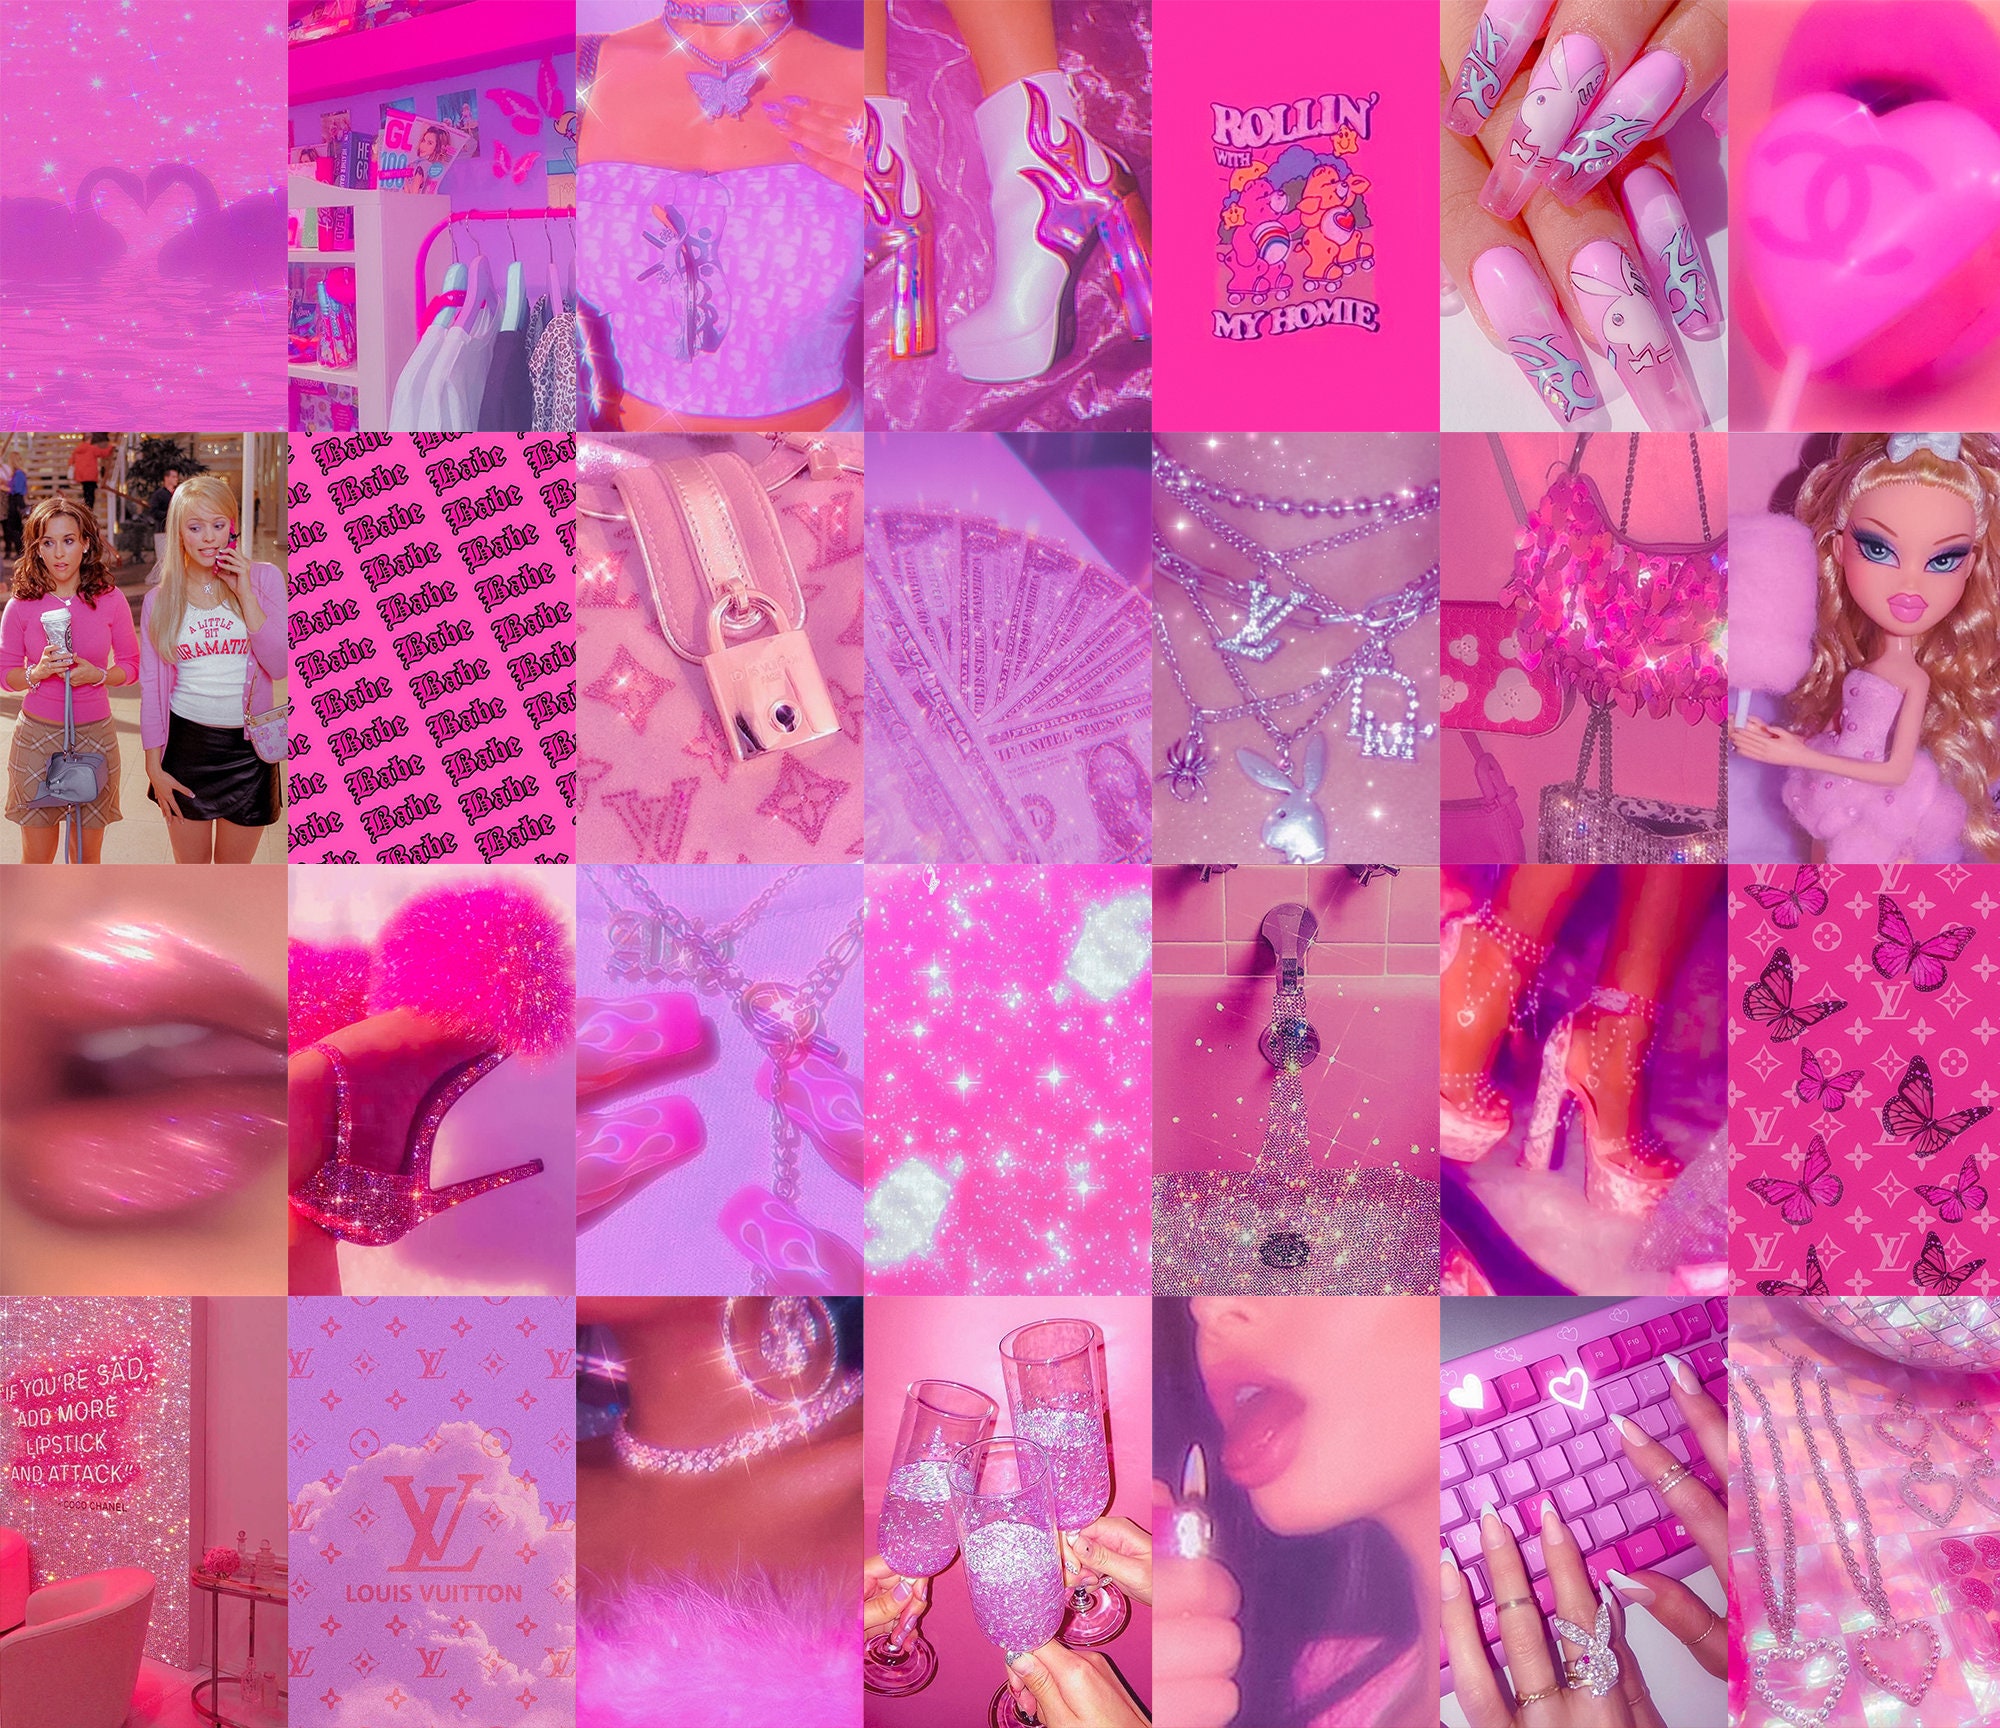 Y2K Hot Pink Wall Collage Kit, 50pcs + Free Tape